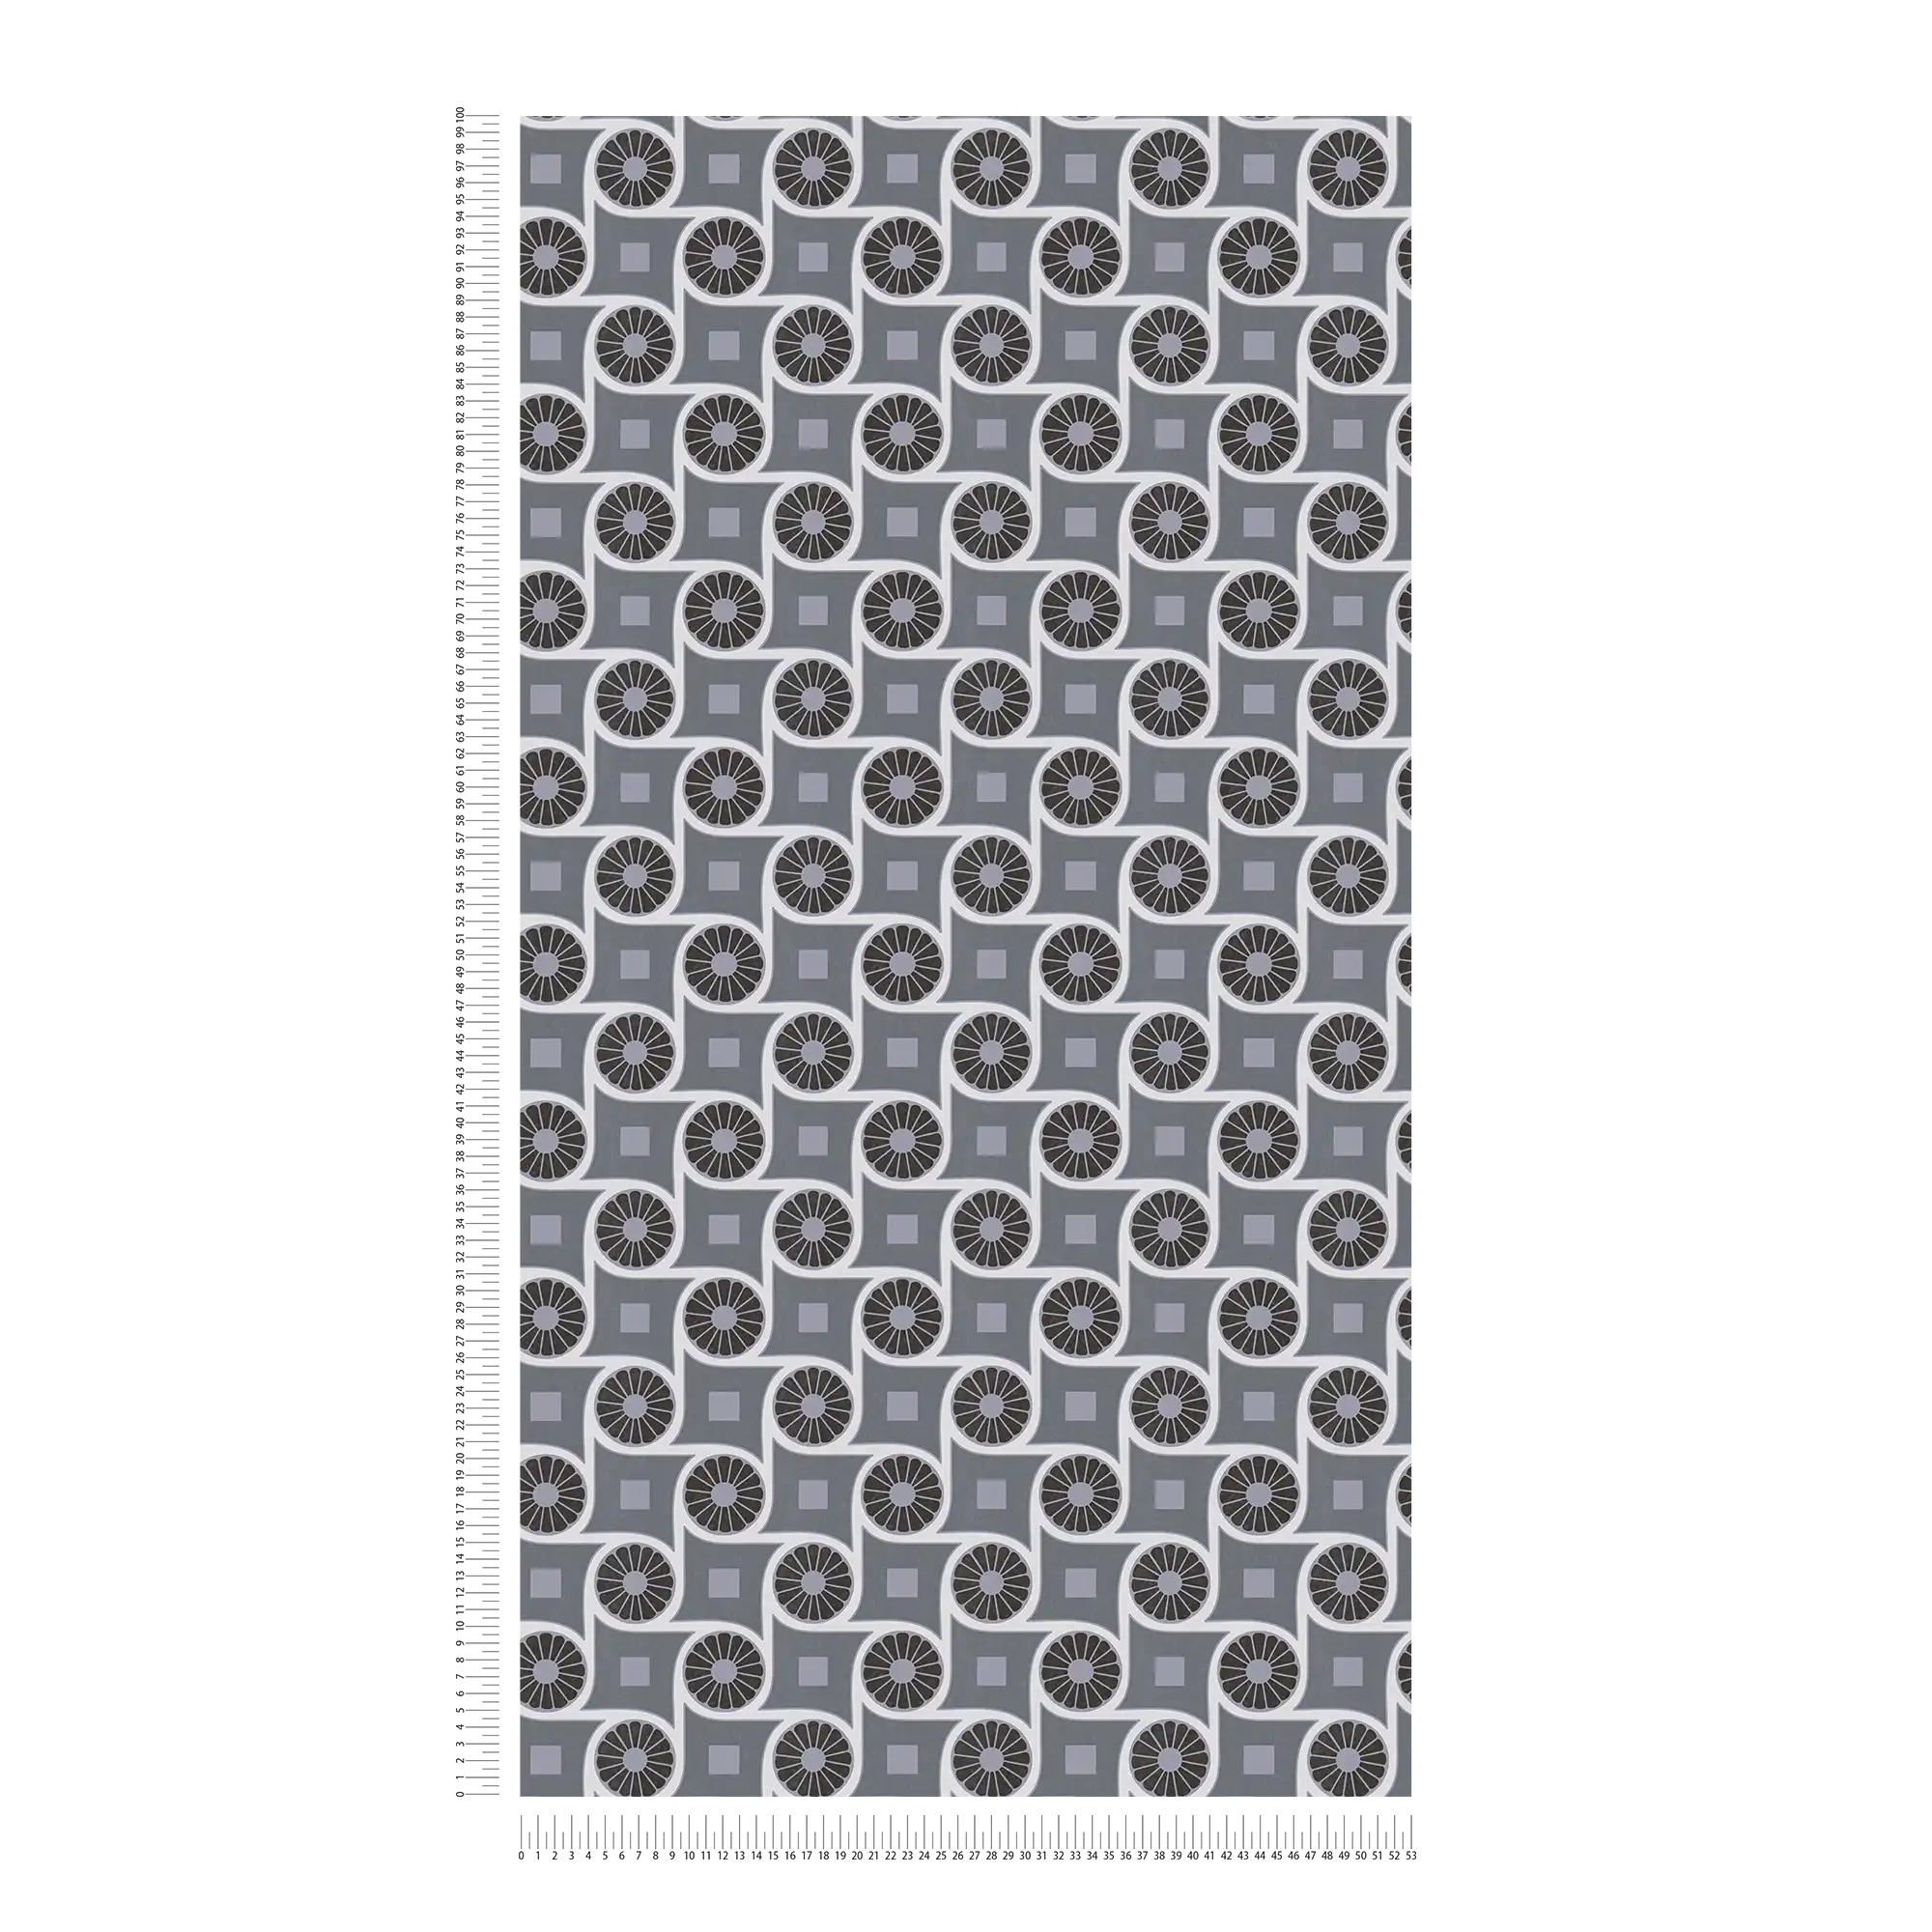             Tapete im Retrostil mit Kreismuster und Quadraten – Grau, Weiß, Schwarz
        